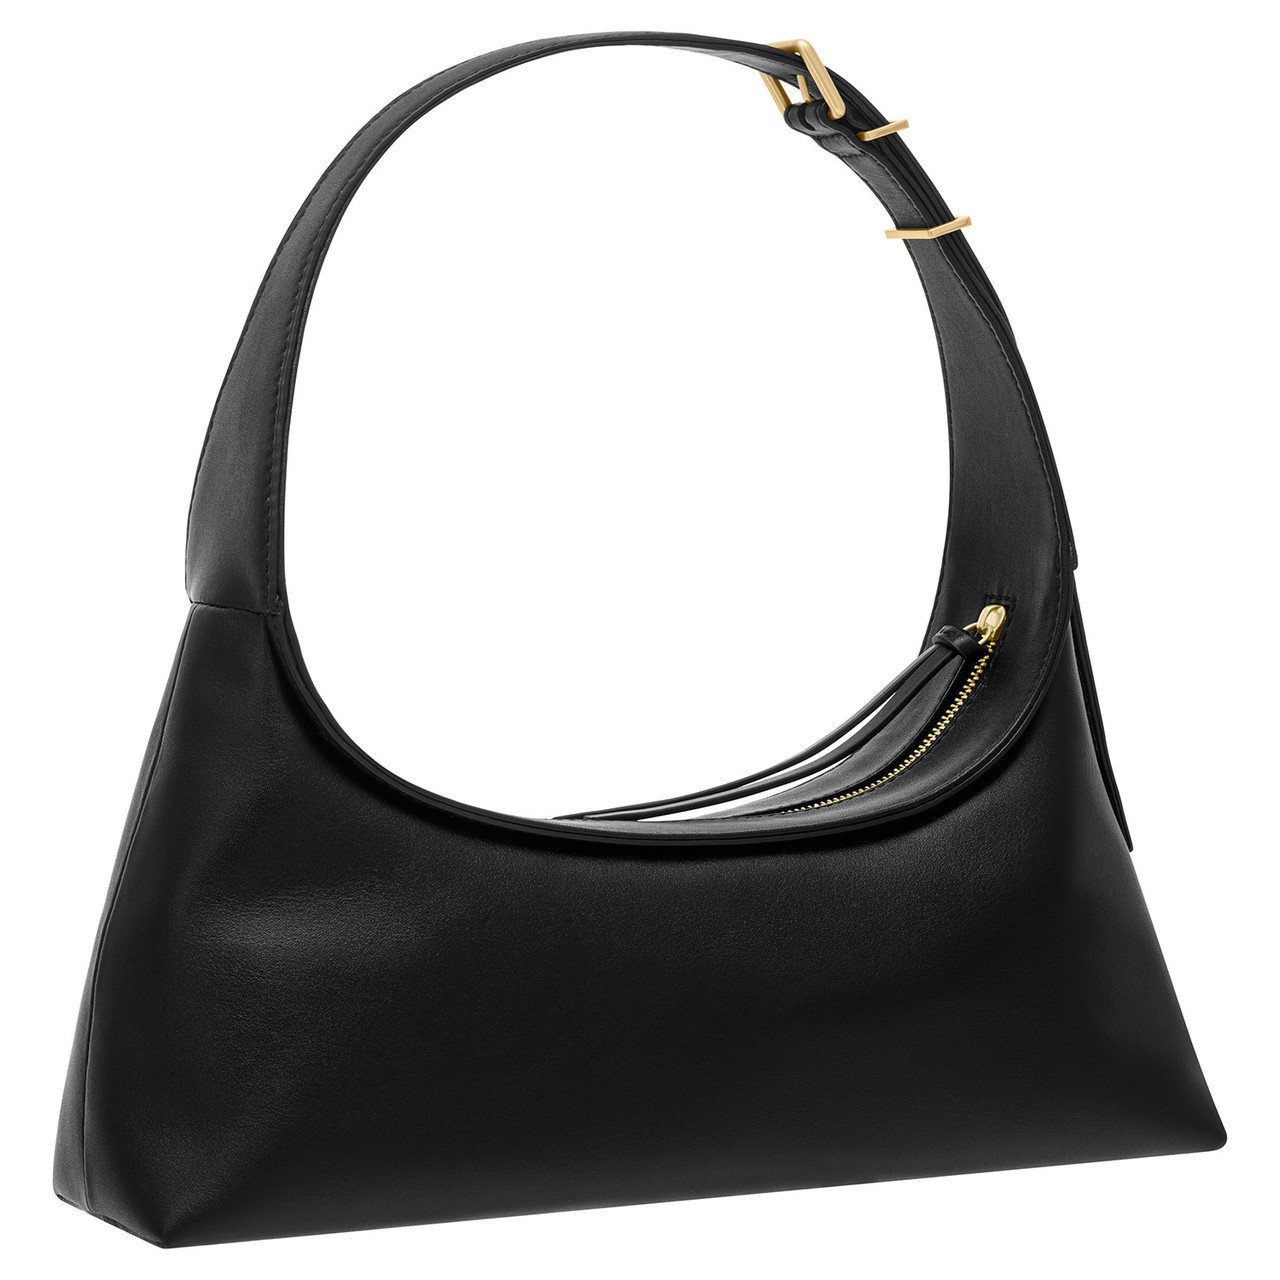 Oroton Cinder Baguette Leather Shoulder Bag - Black - ShopStyle